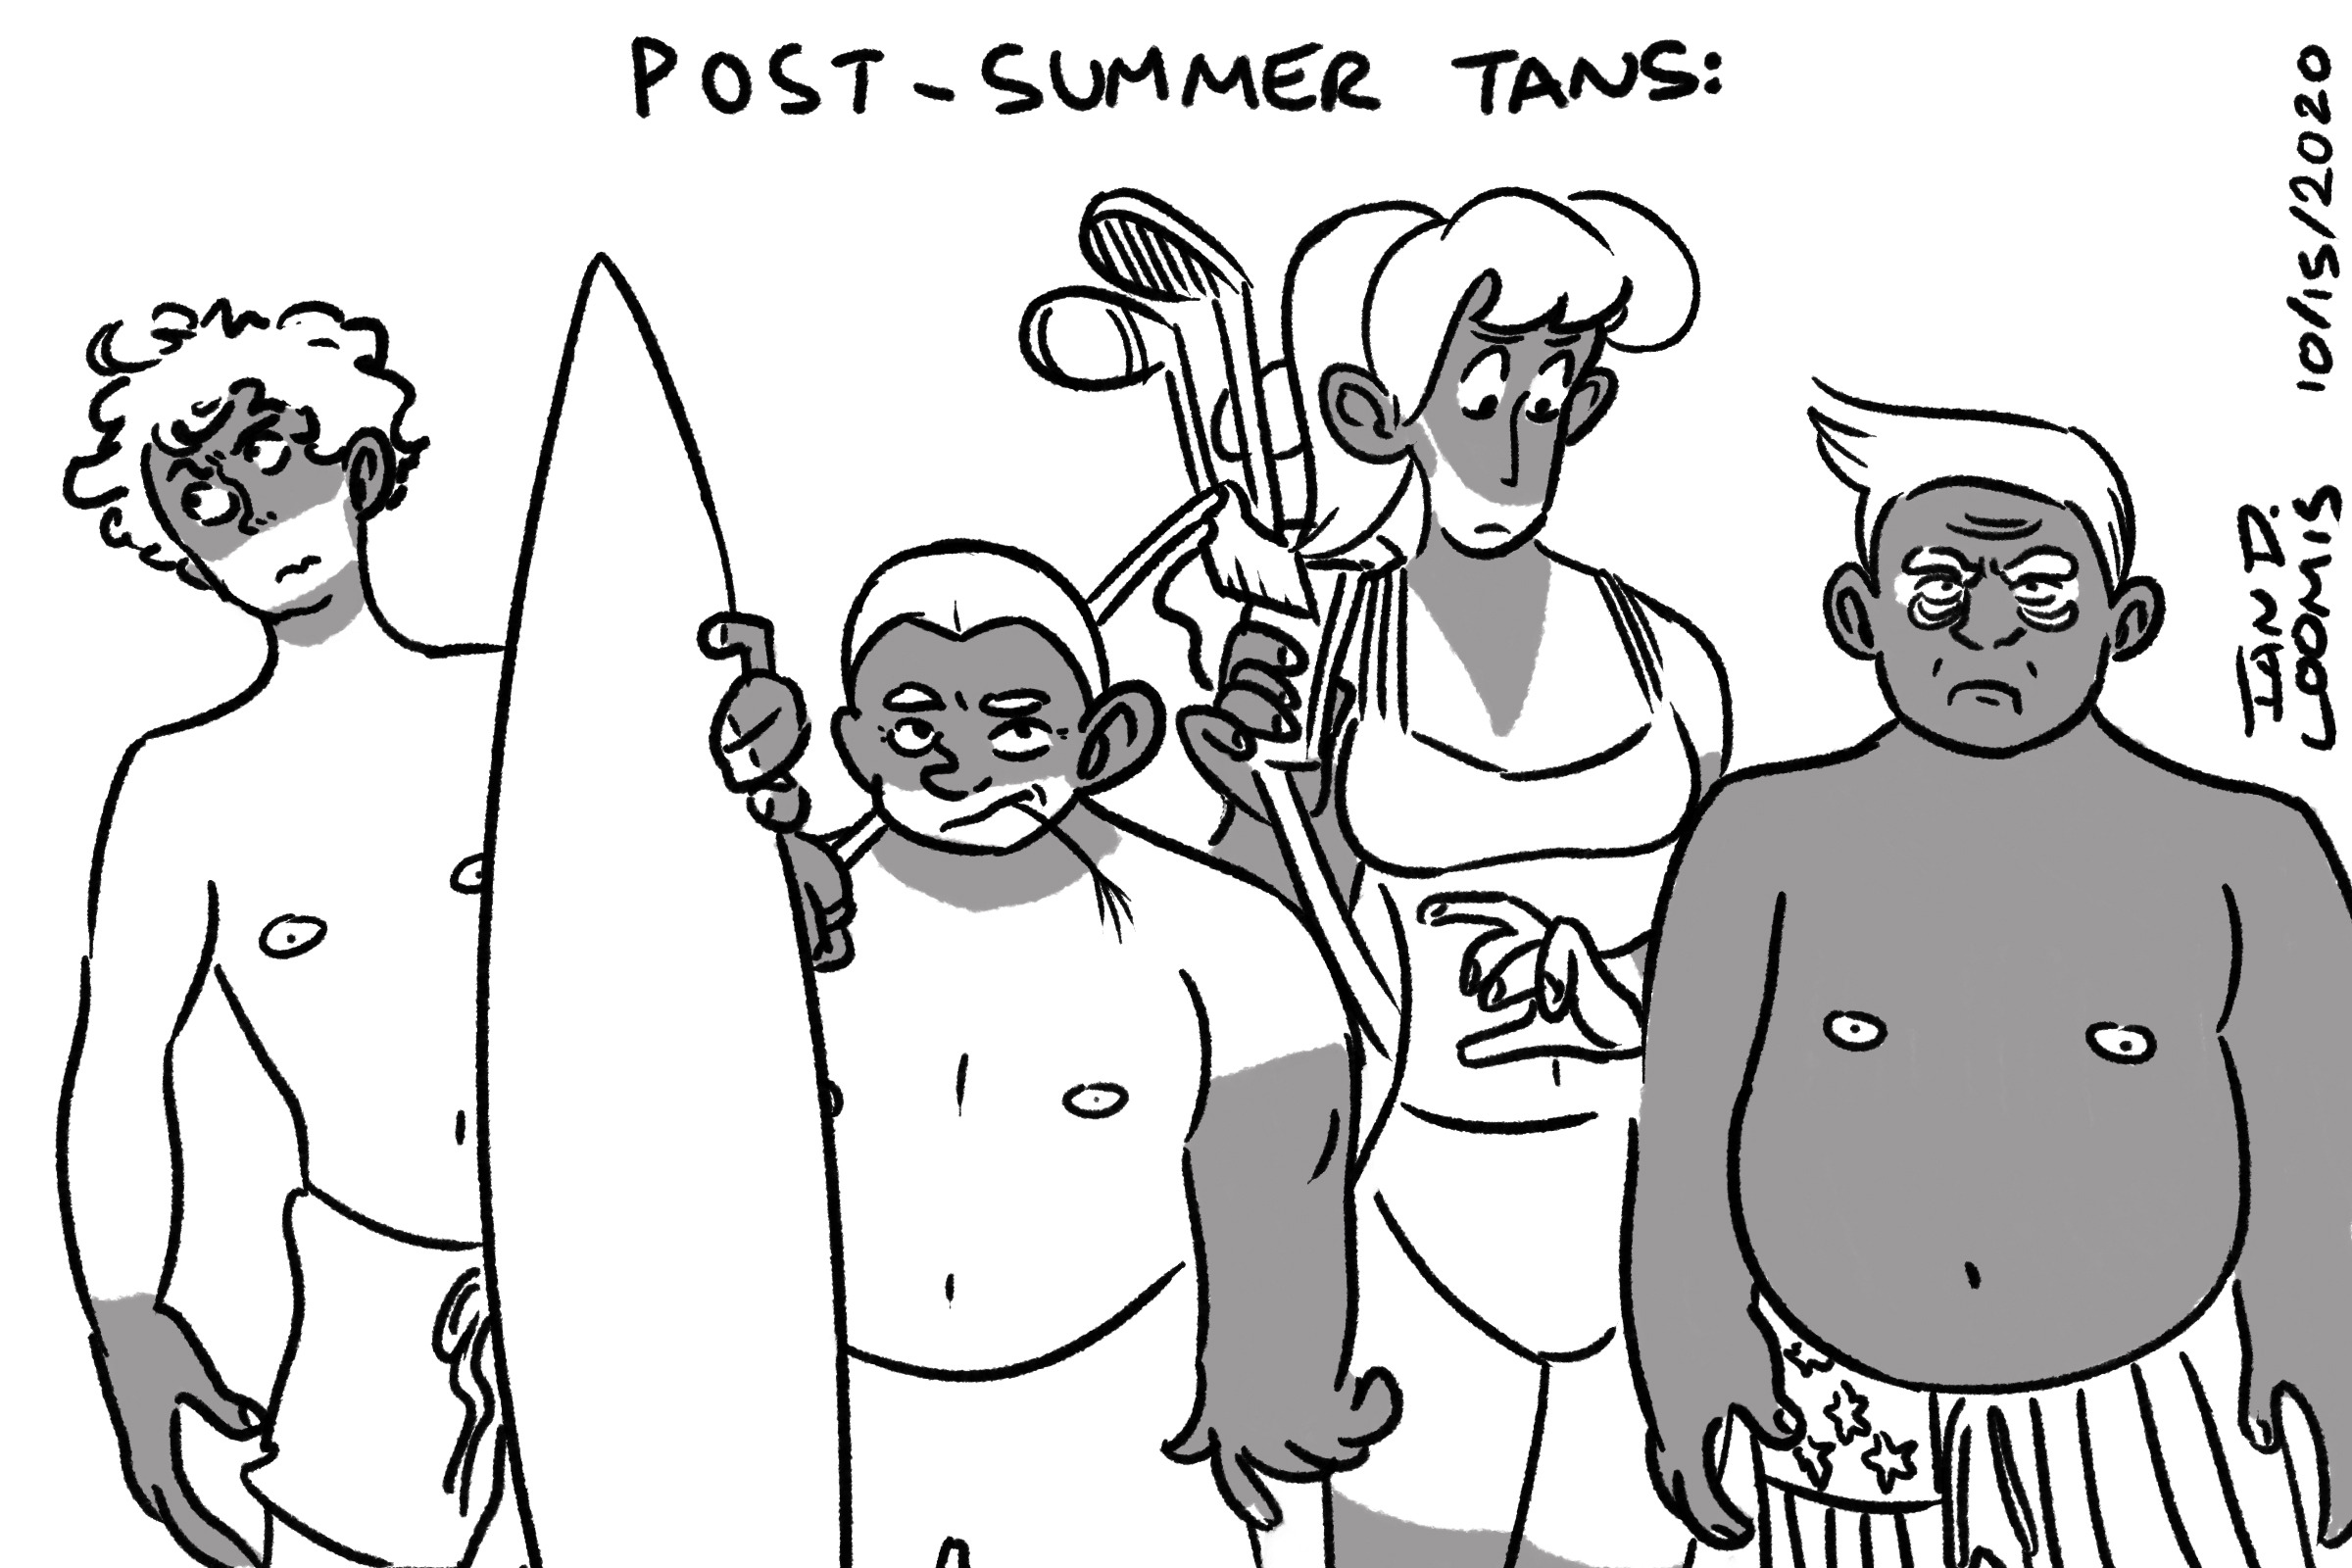 Post-Summer Tans